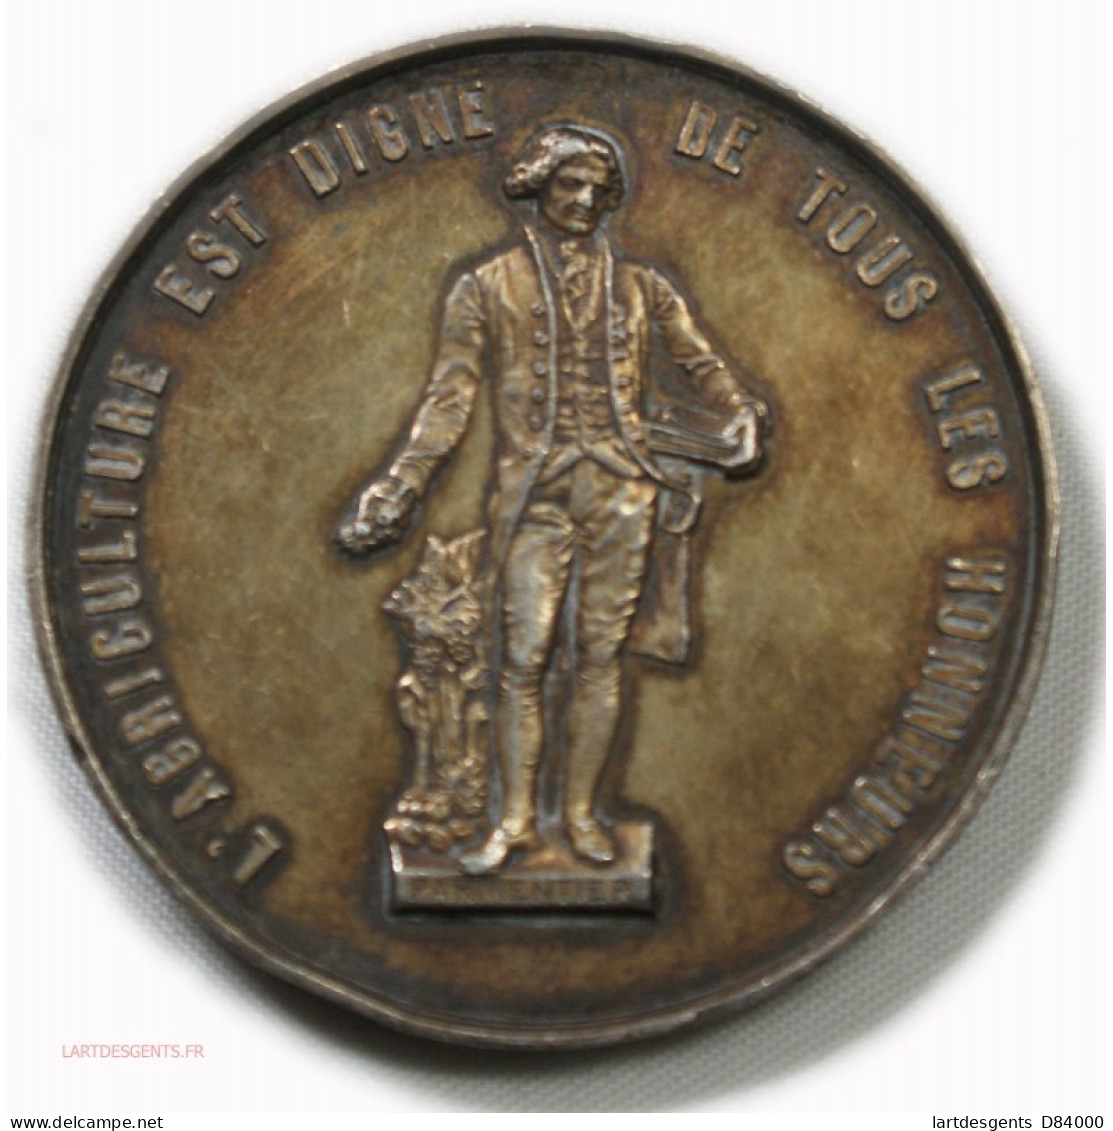 Médaille Argent, L'agriculture Est Digne De Tous Les Honneurs, Vouziers - Professionals/Firms